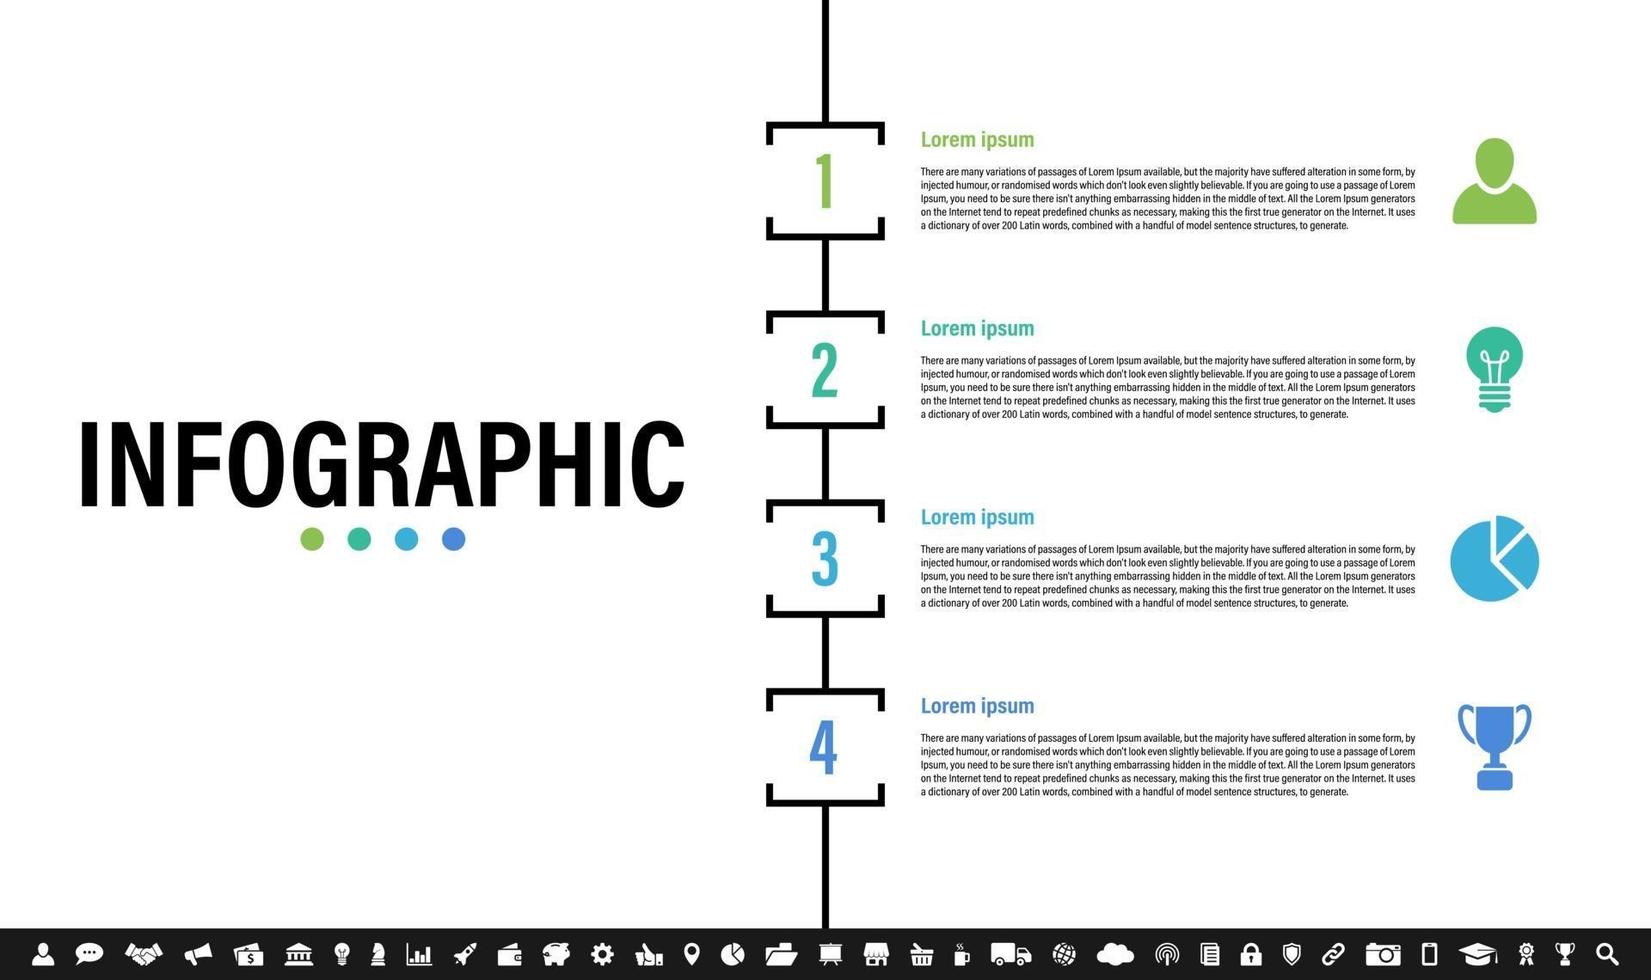 modello di progettazione infografica con il concetto di business vettore